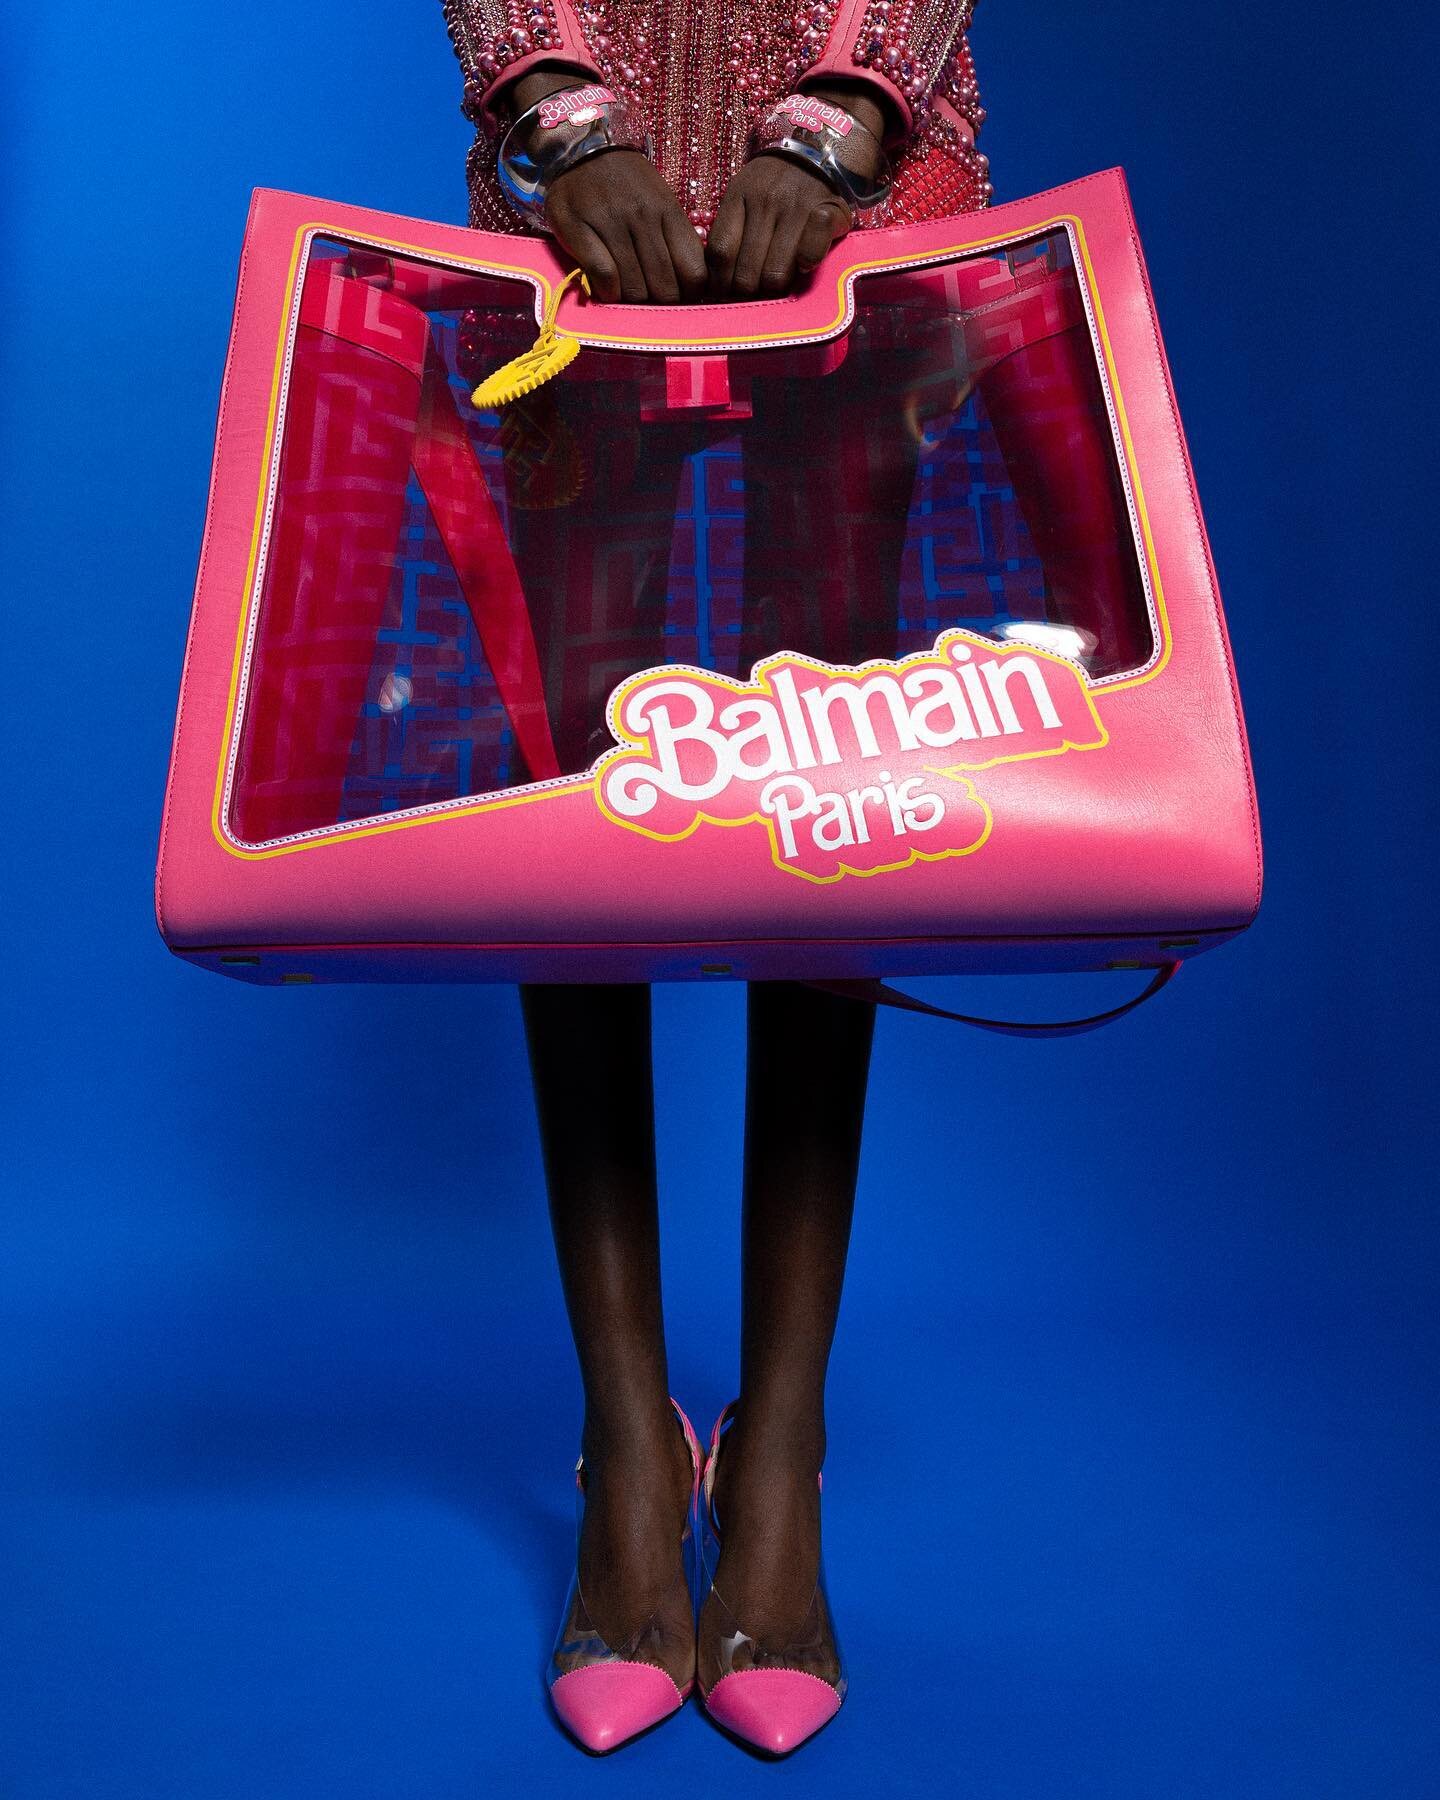 Balmain ocupa el logo e Barbie | Foto: Cortesía de Balmain